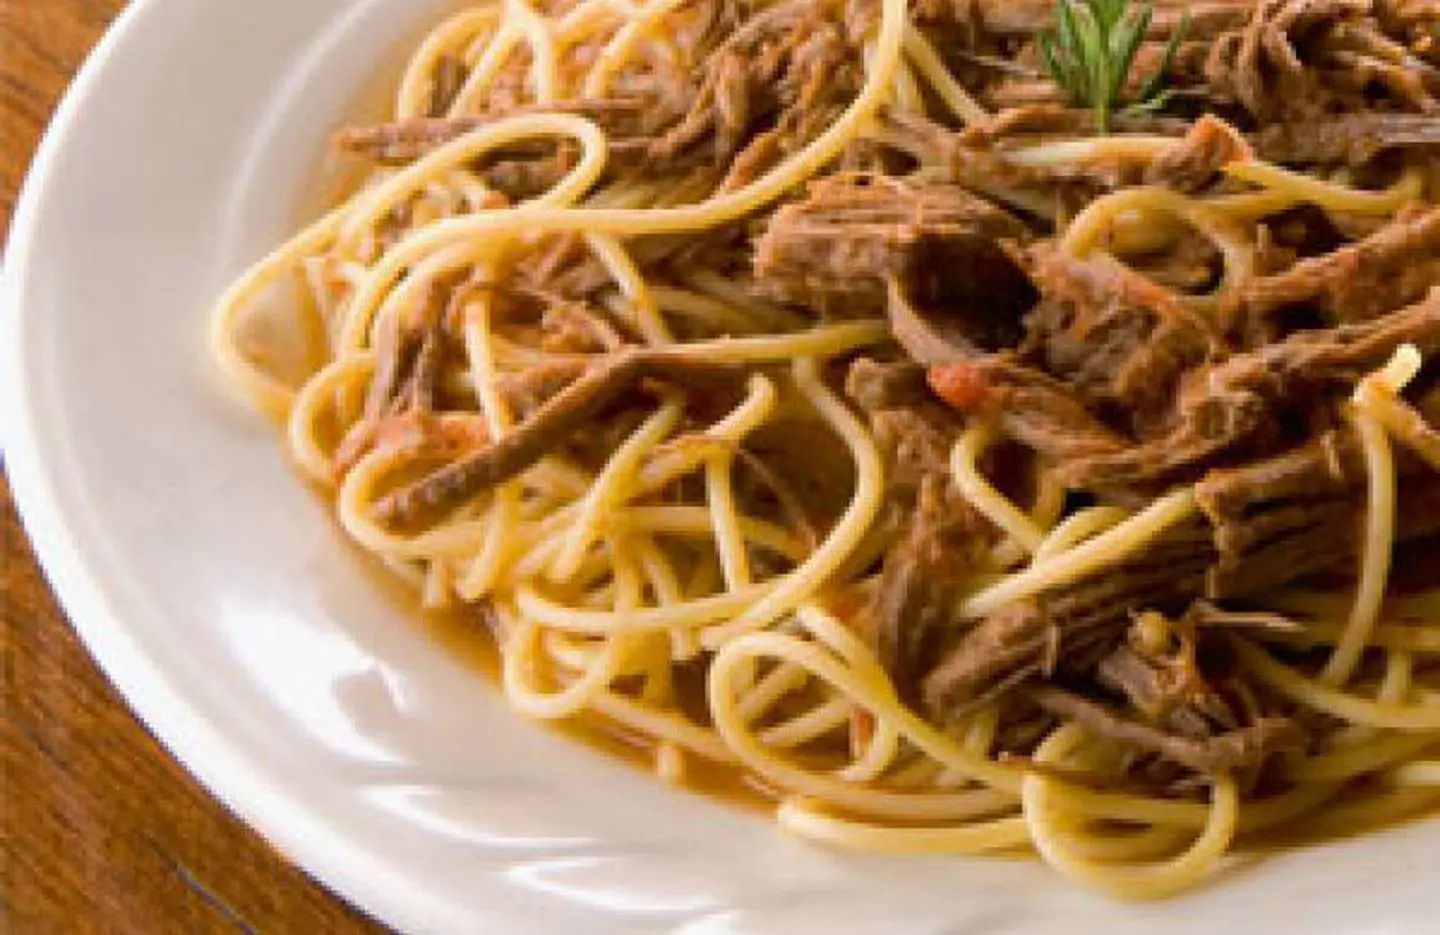 espaguetis con carne desmechada - Cómo se dice carne mechada o carne desmechada